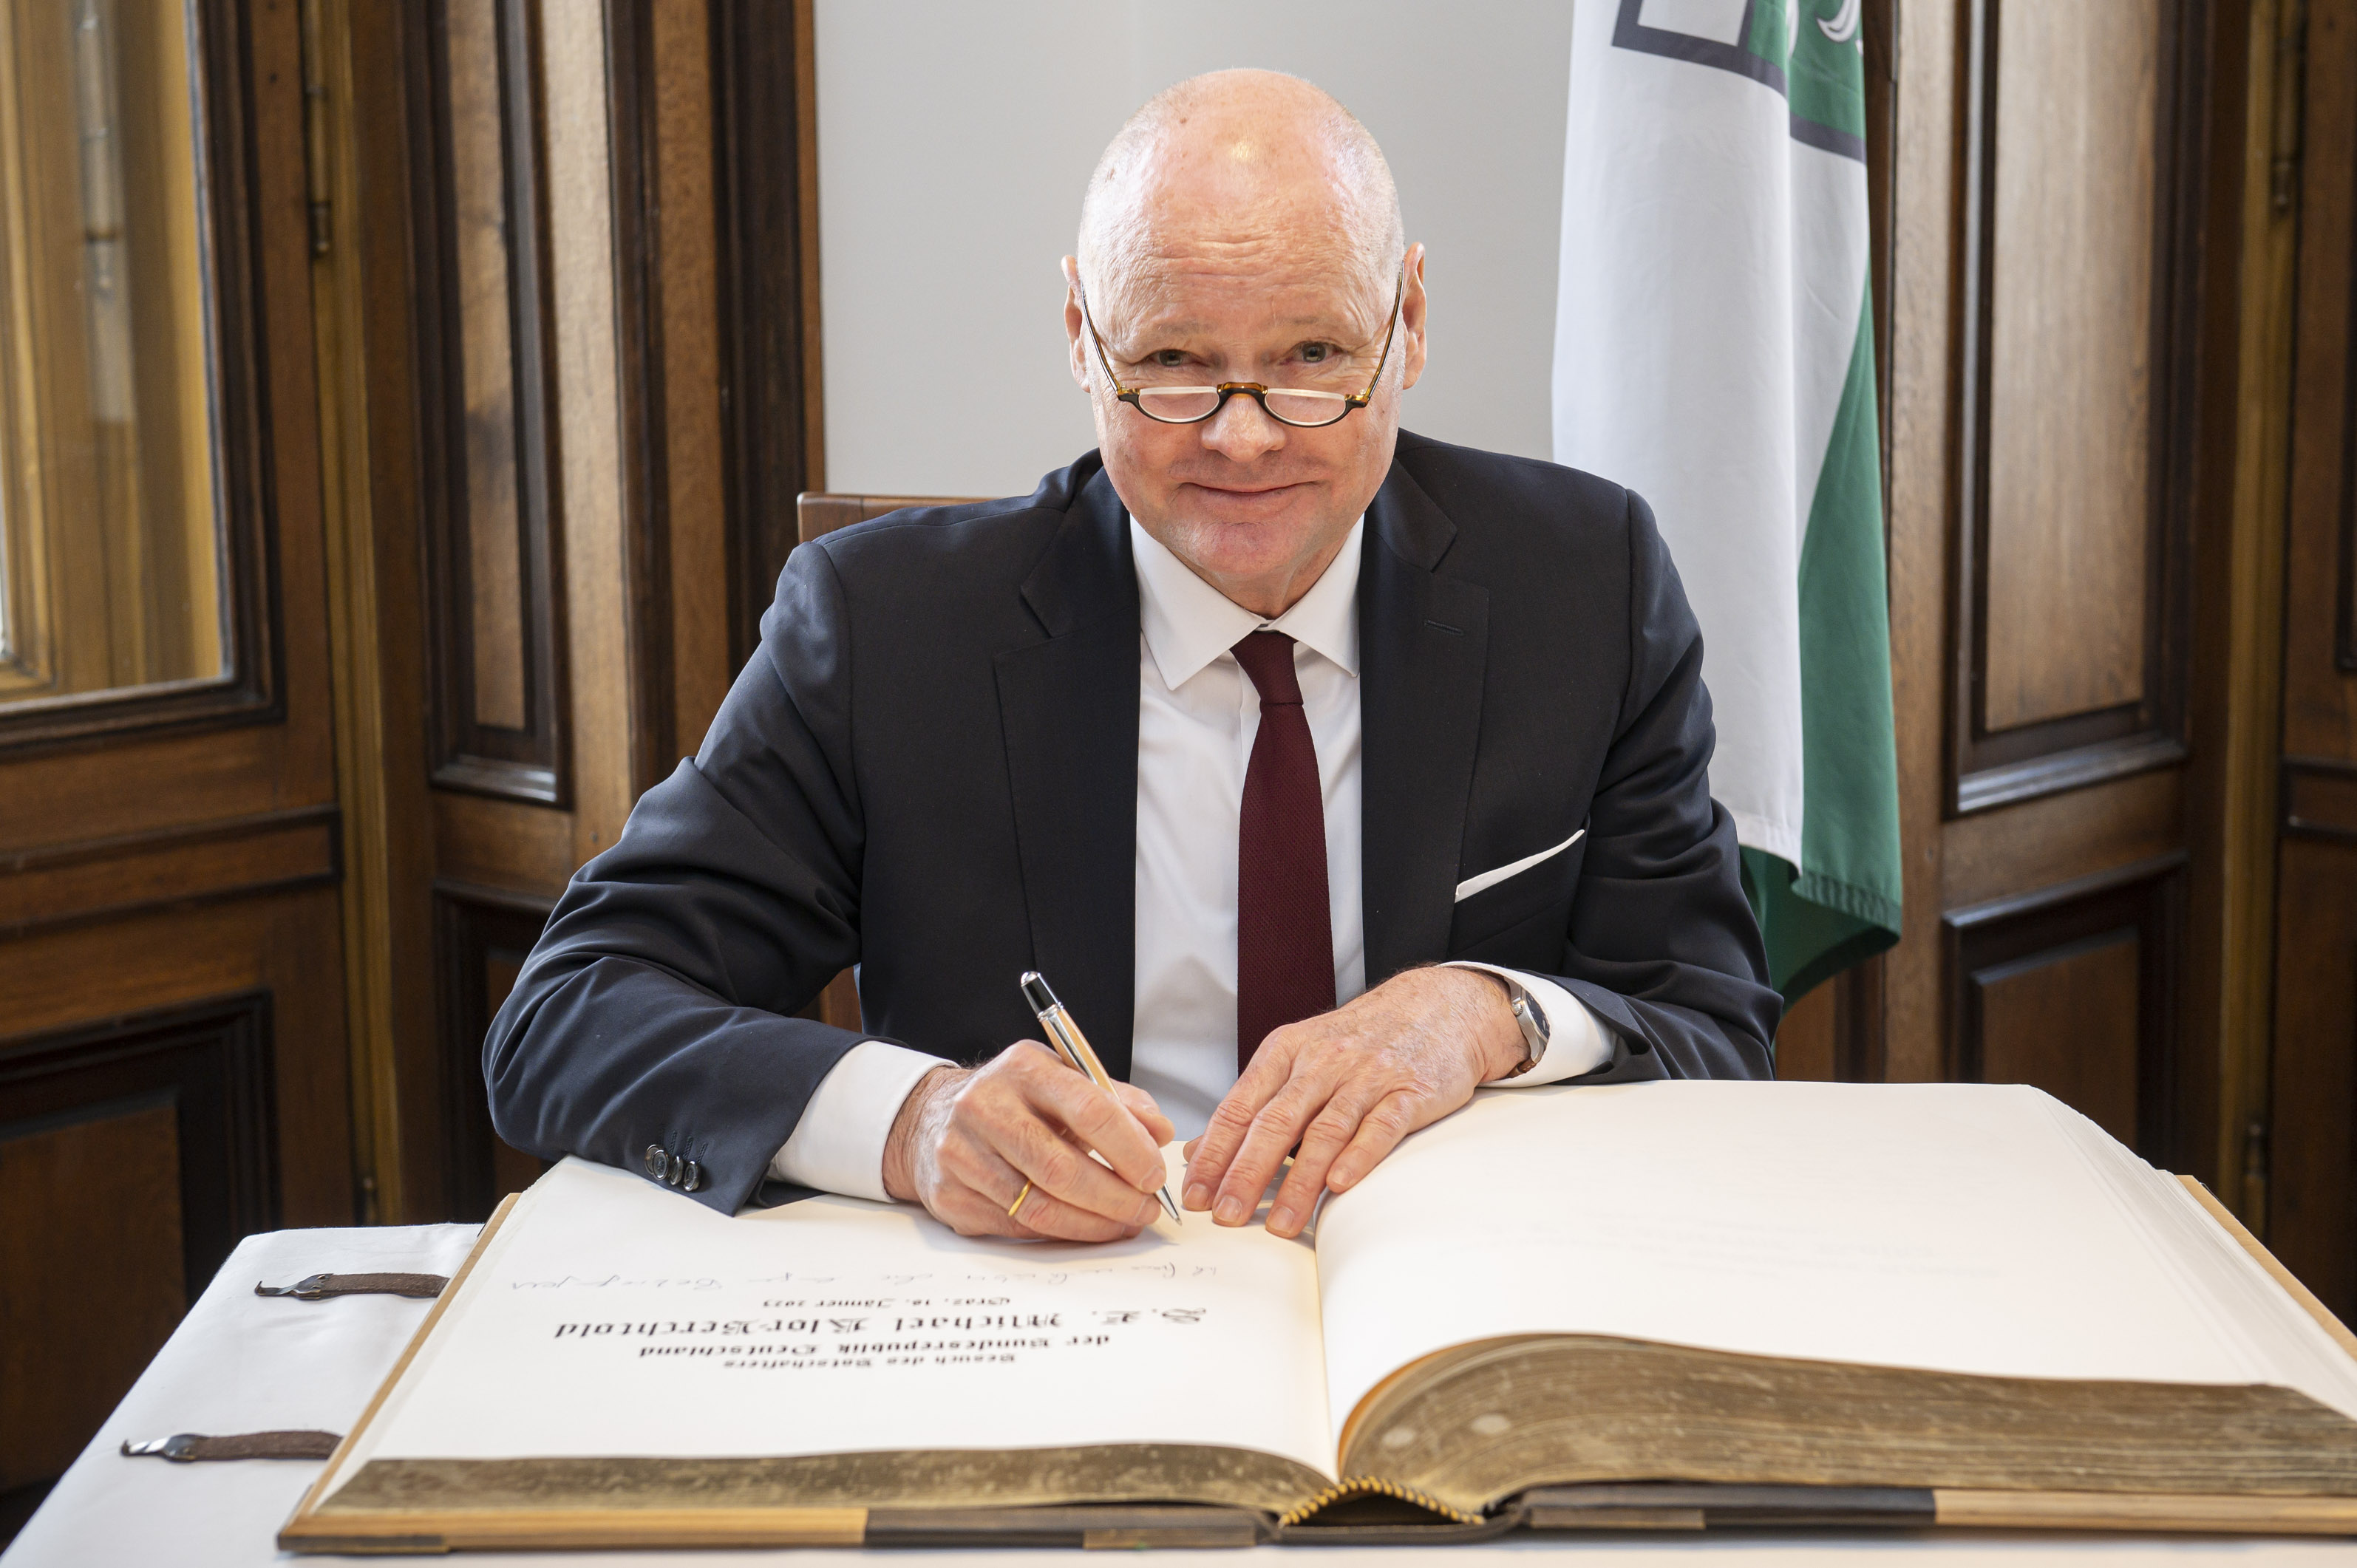 Der deutsche Botschafter Michael Klor-Berchtold verewigte sich im Goldenen Buch der Stadt Graz.